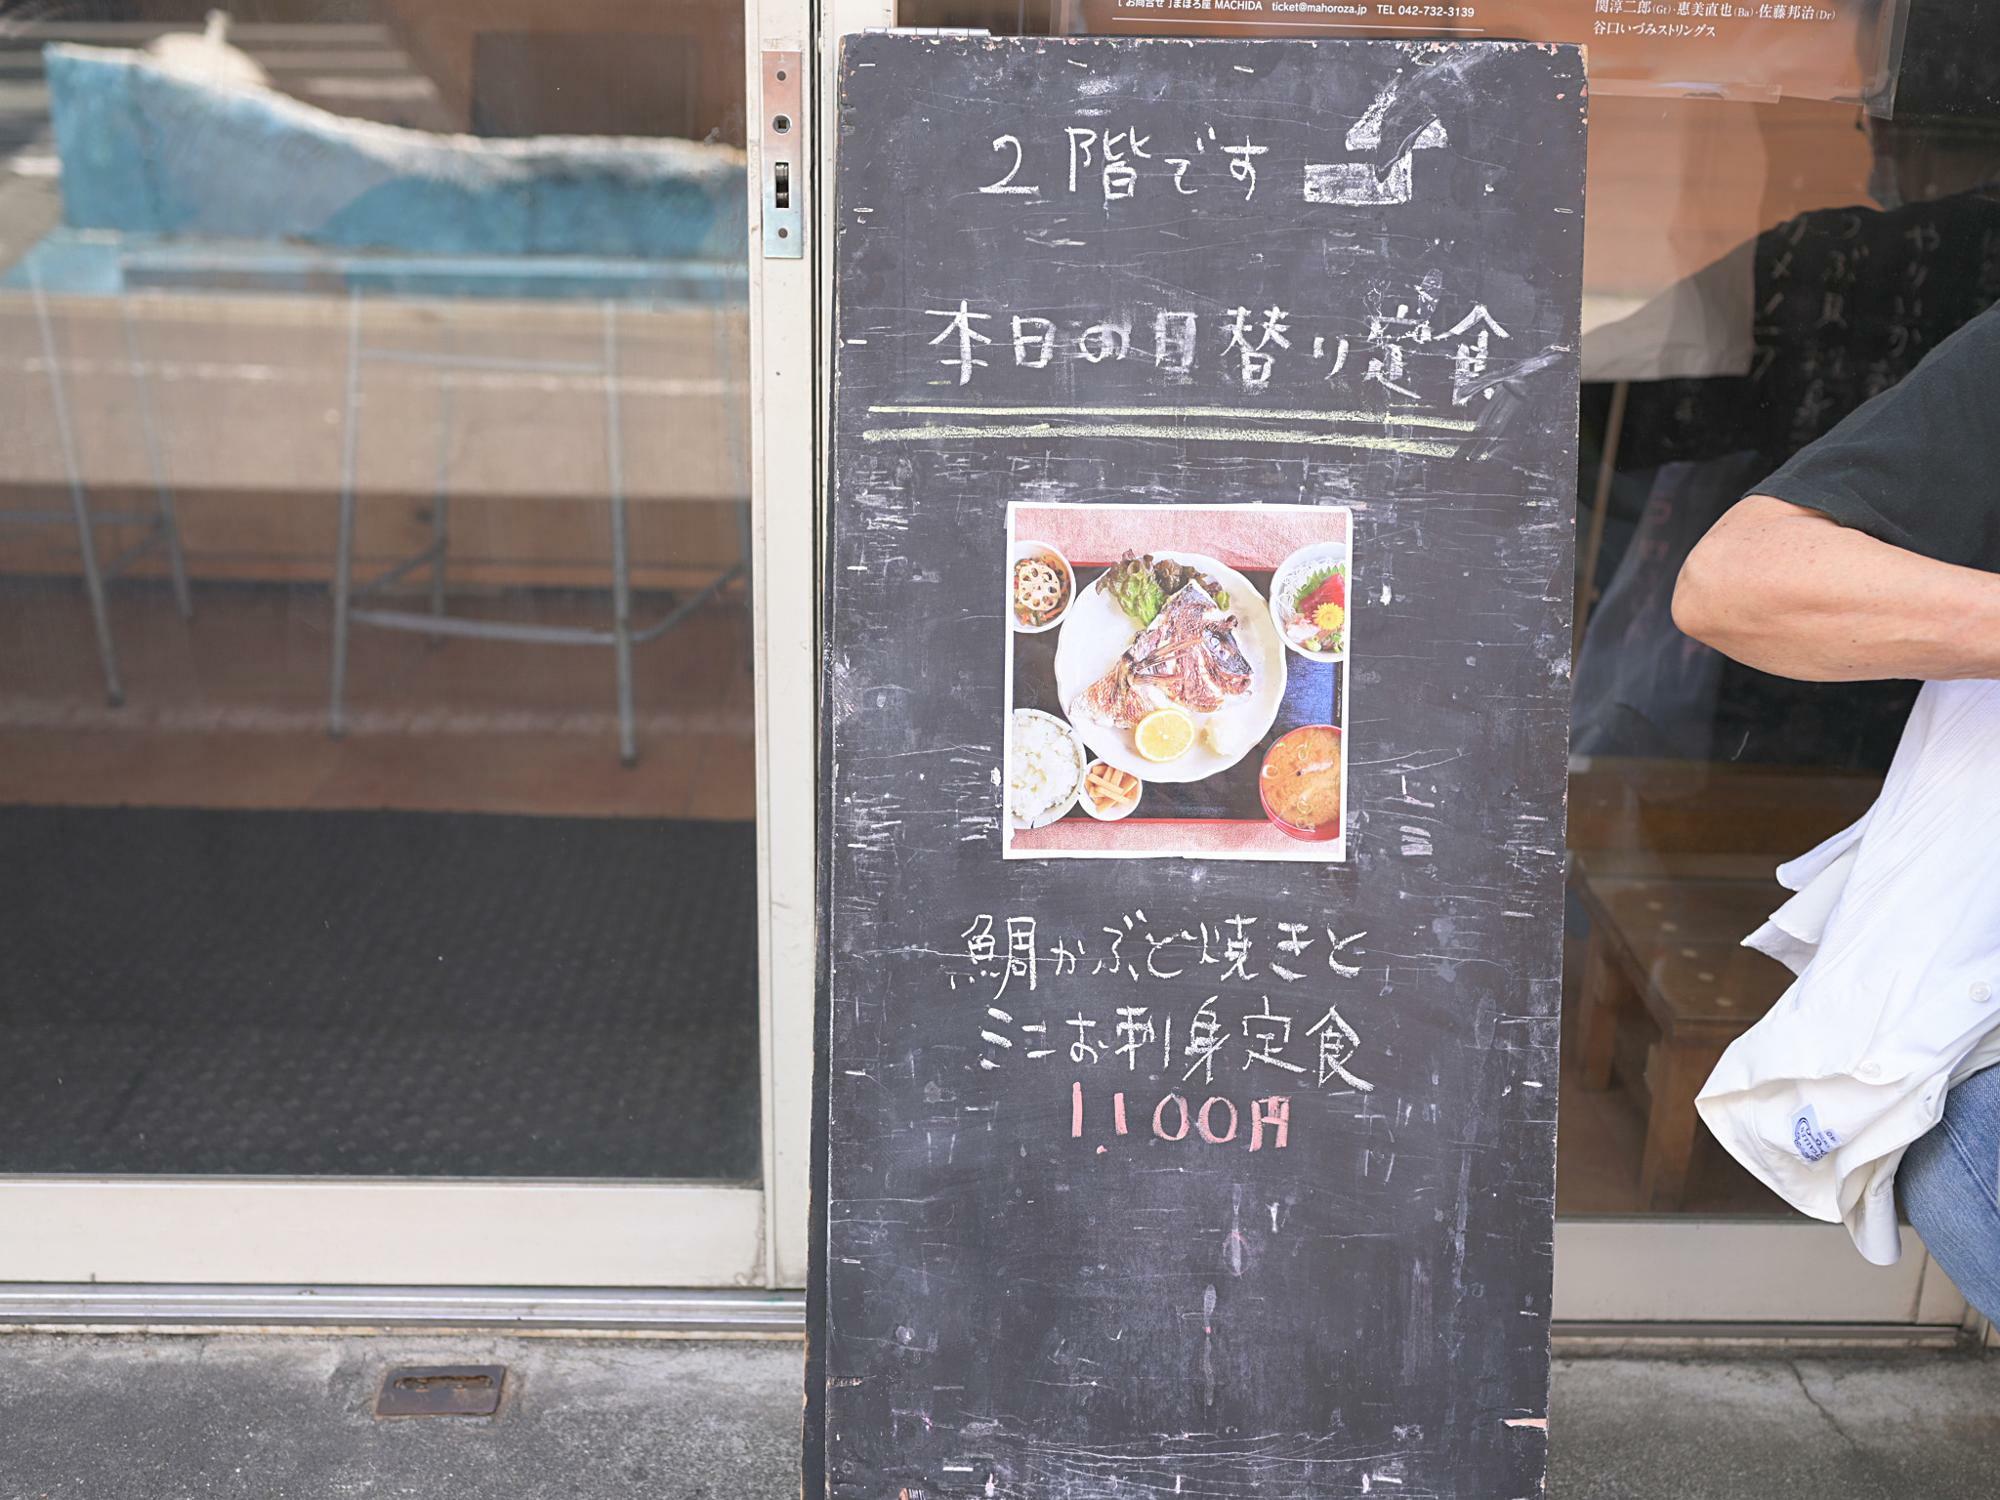 本日の日替り定食/鯛かぶと焼きとミニお刺身定食 1,100円 税込